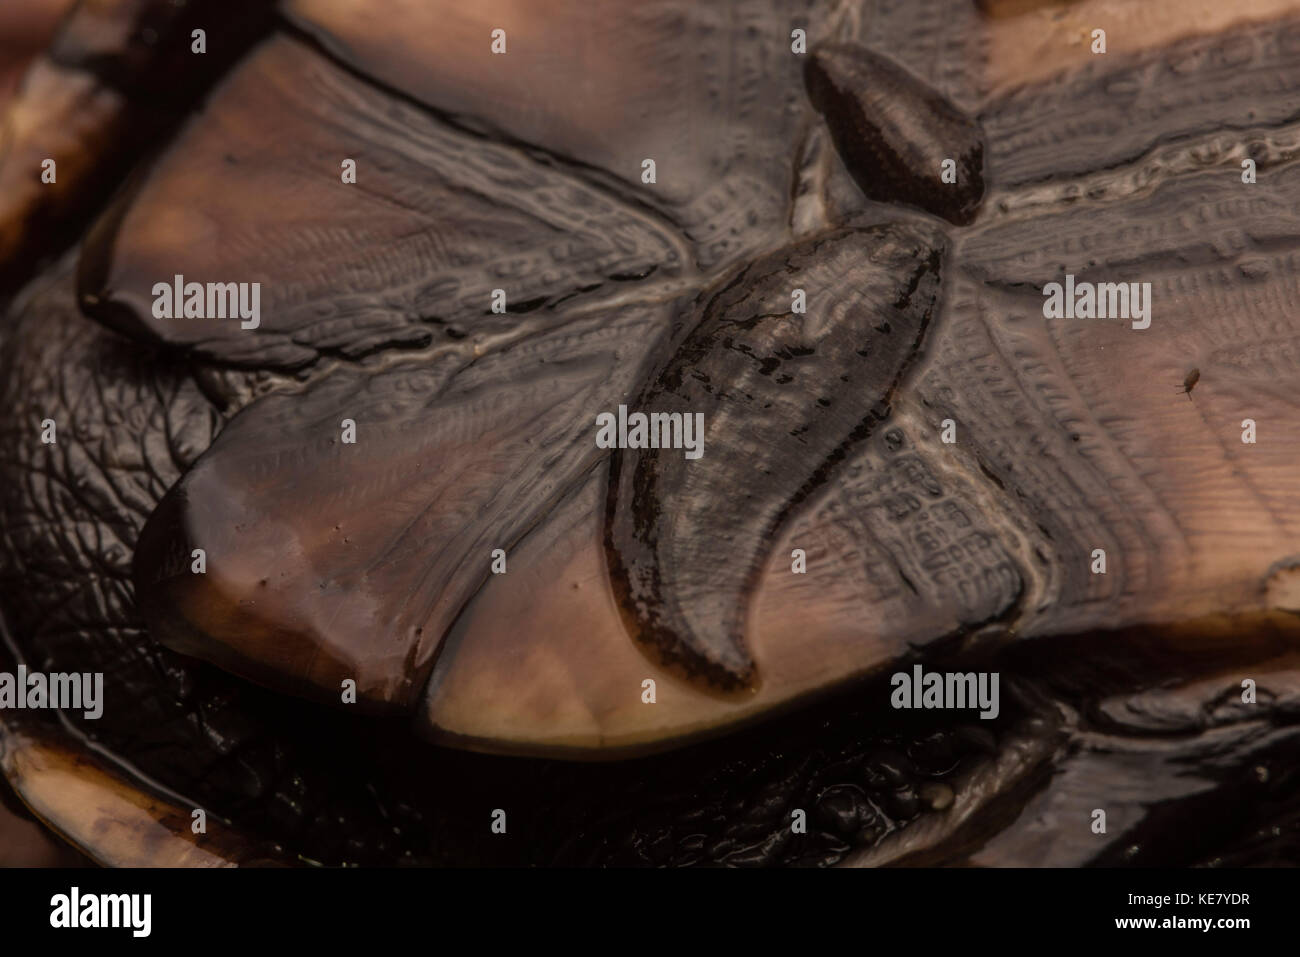 Blutegel häufig Schildkröten parasitieren, dieser Kinosternon sp. Moschus Schildkröte hatte zwei Blutegel an der Unterseite der Schale befestigt. Stockfoto